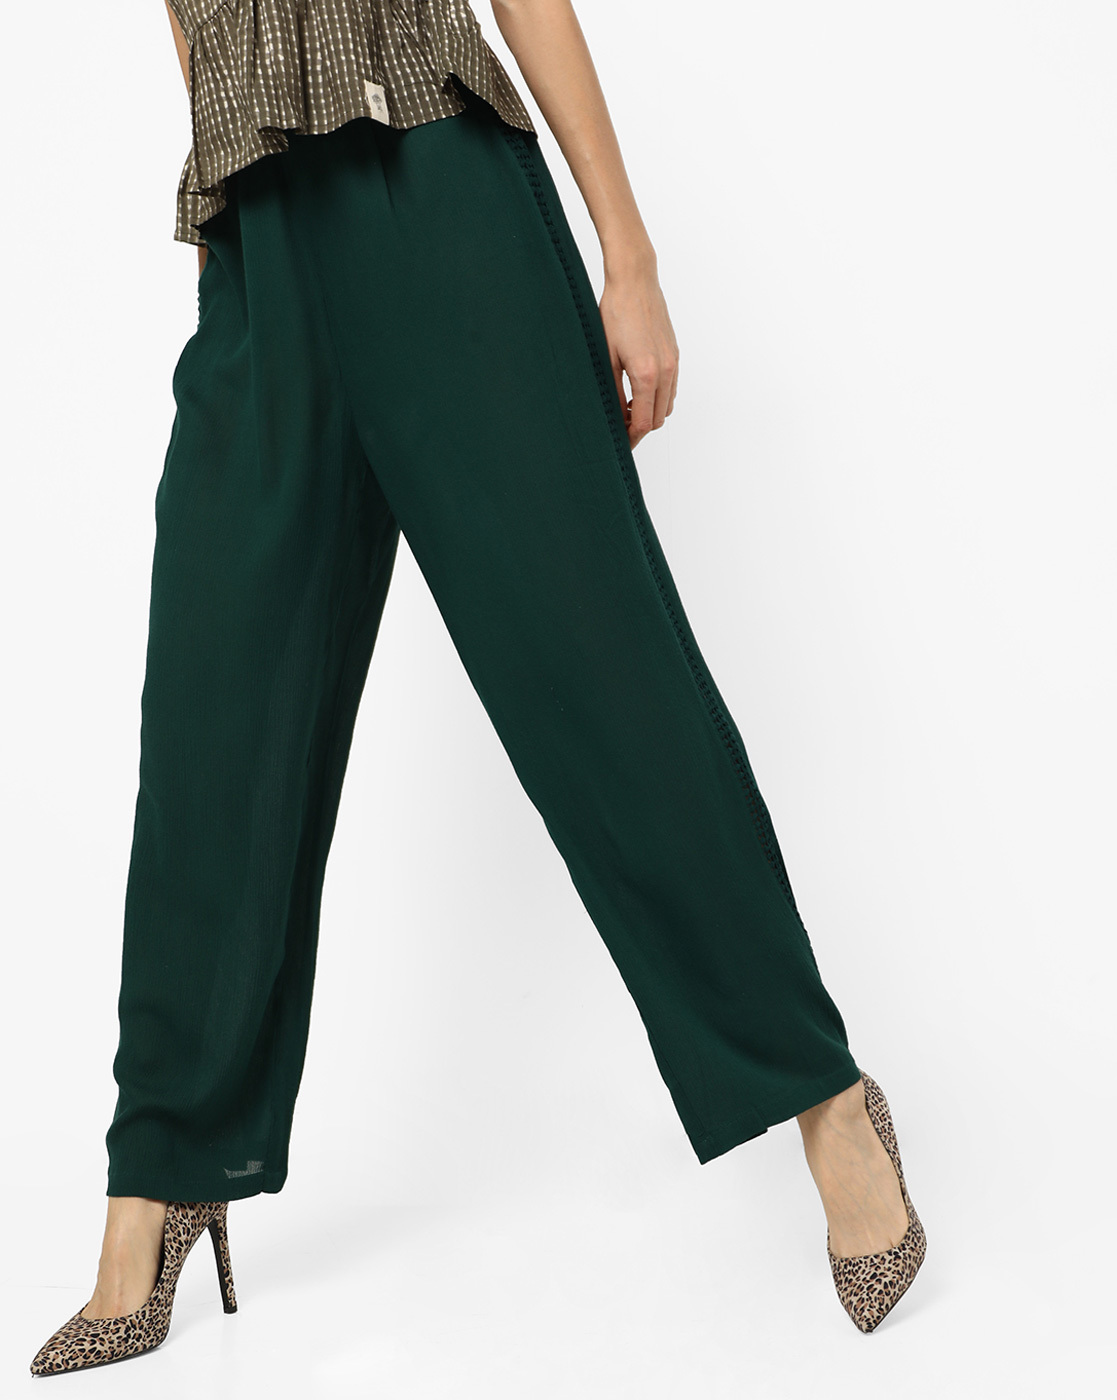 Buy Sea Green Pants for Women by AJIO Online  Ajiocom